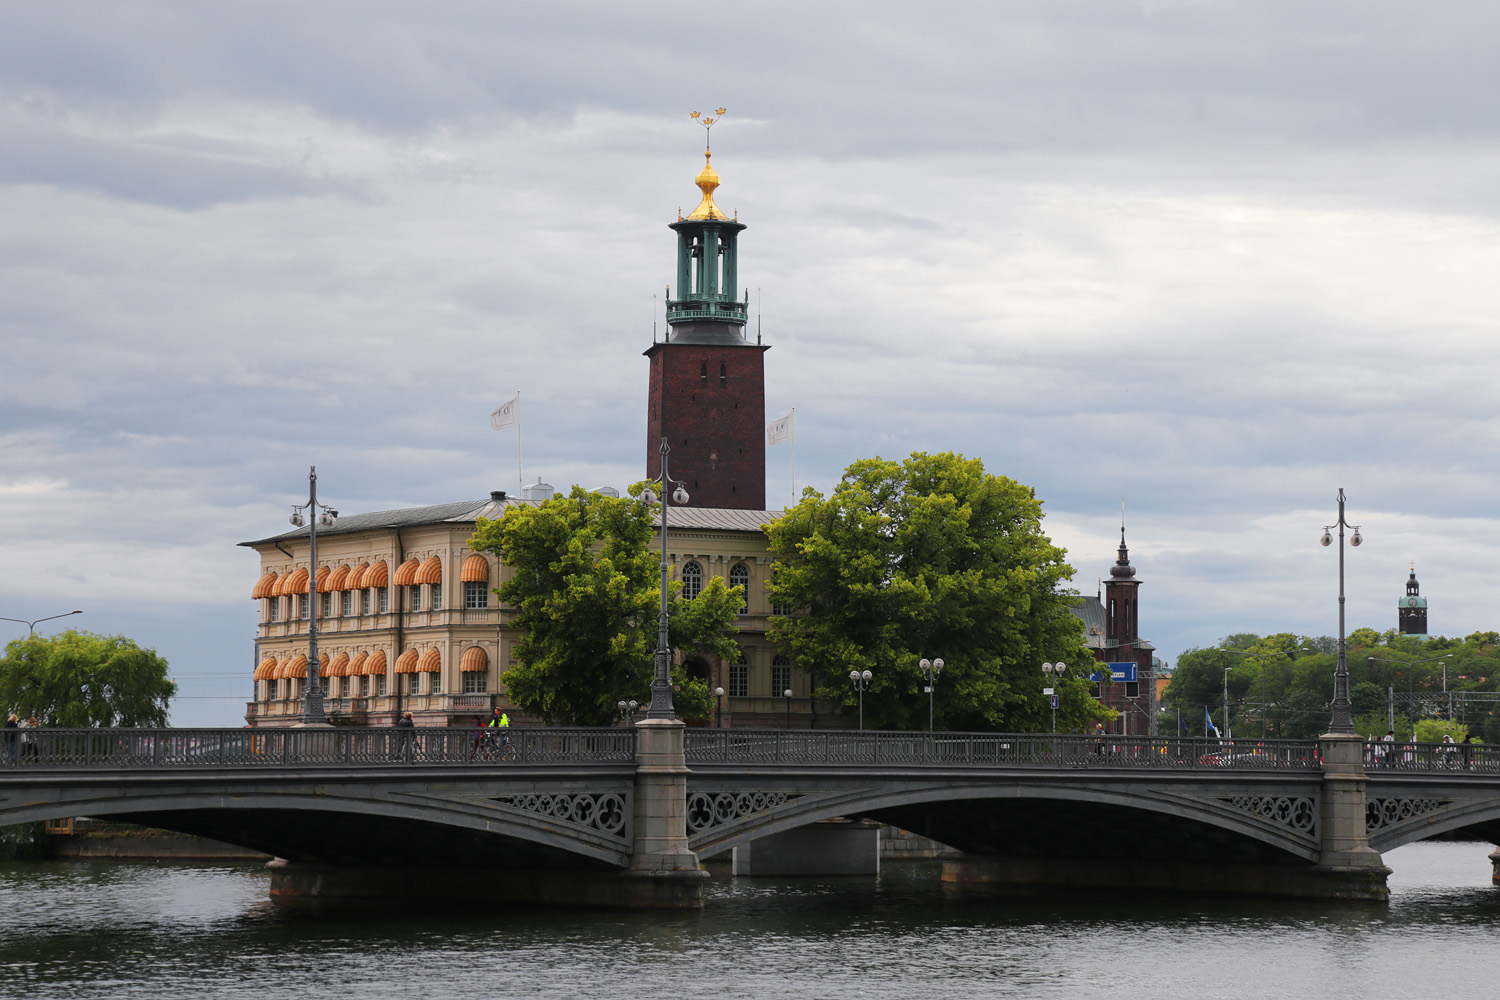 bill-hocker-vasa-bridge-city-hall-stockholm-sweden-2019